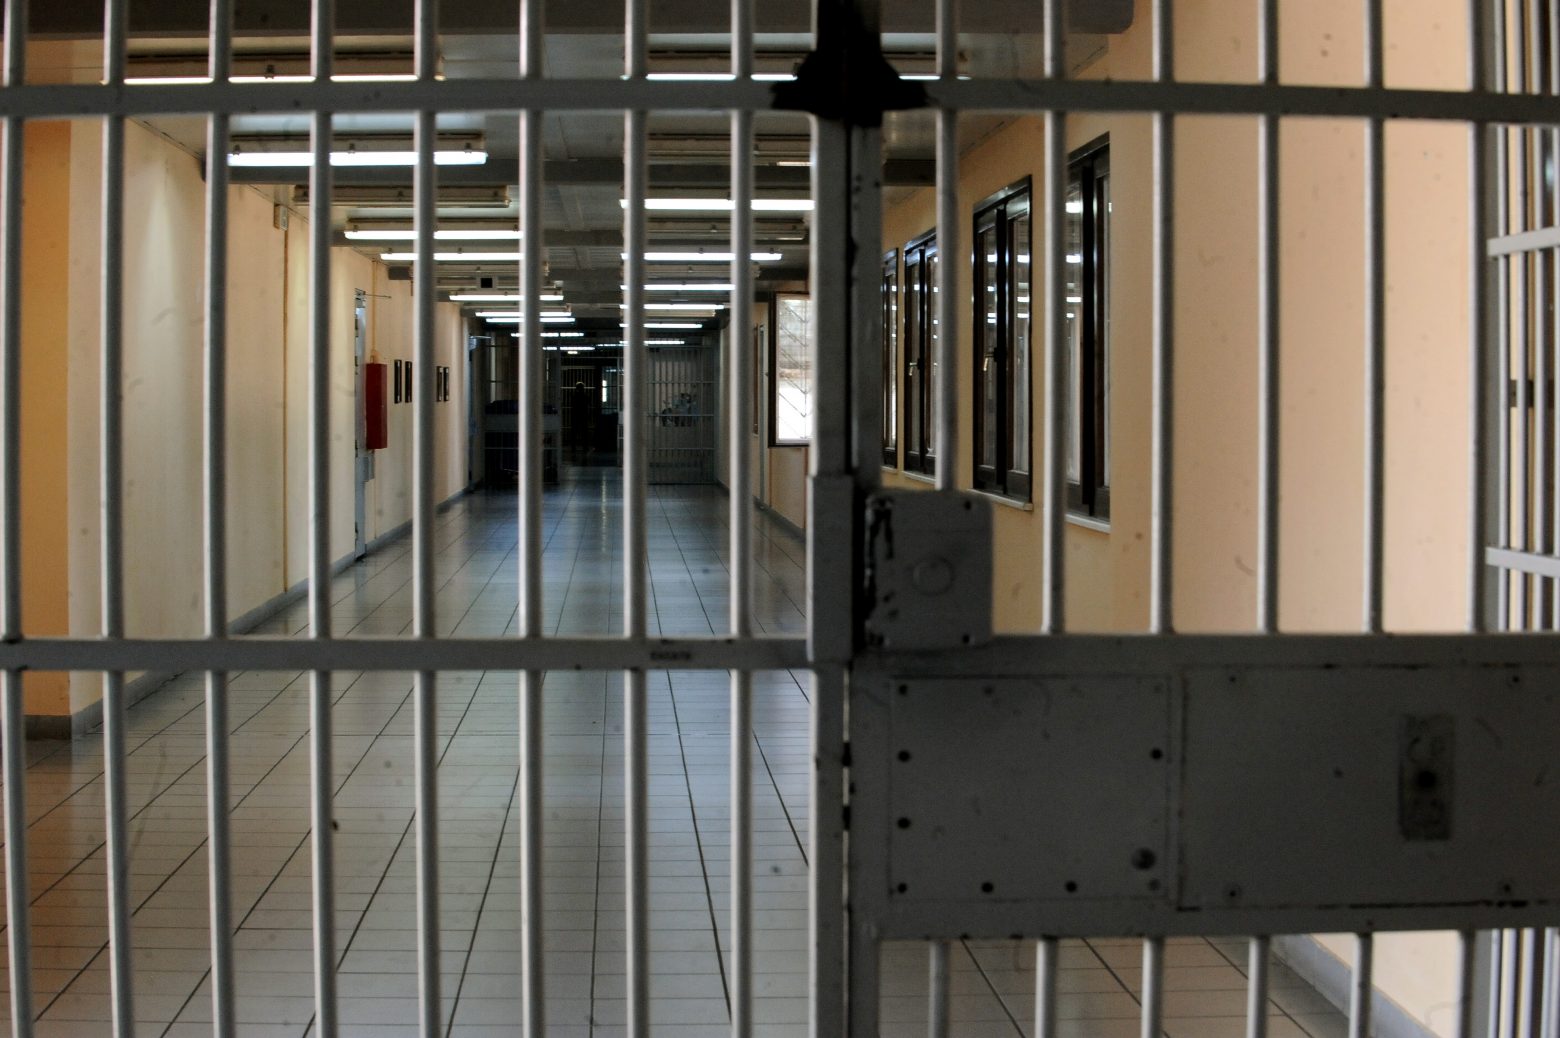 Ηράκλειο - Πέθανε ο κρατούμενος που τραυματίστηκε στη φυλακή Αλικαρνασσού